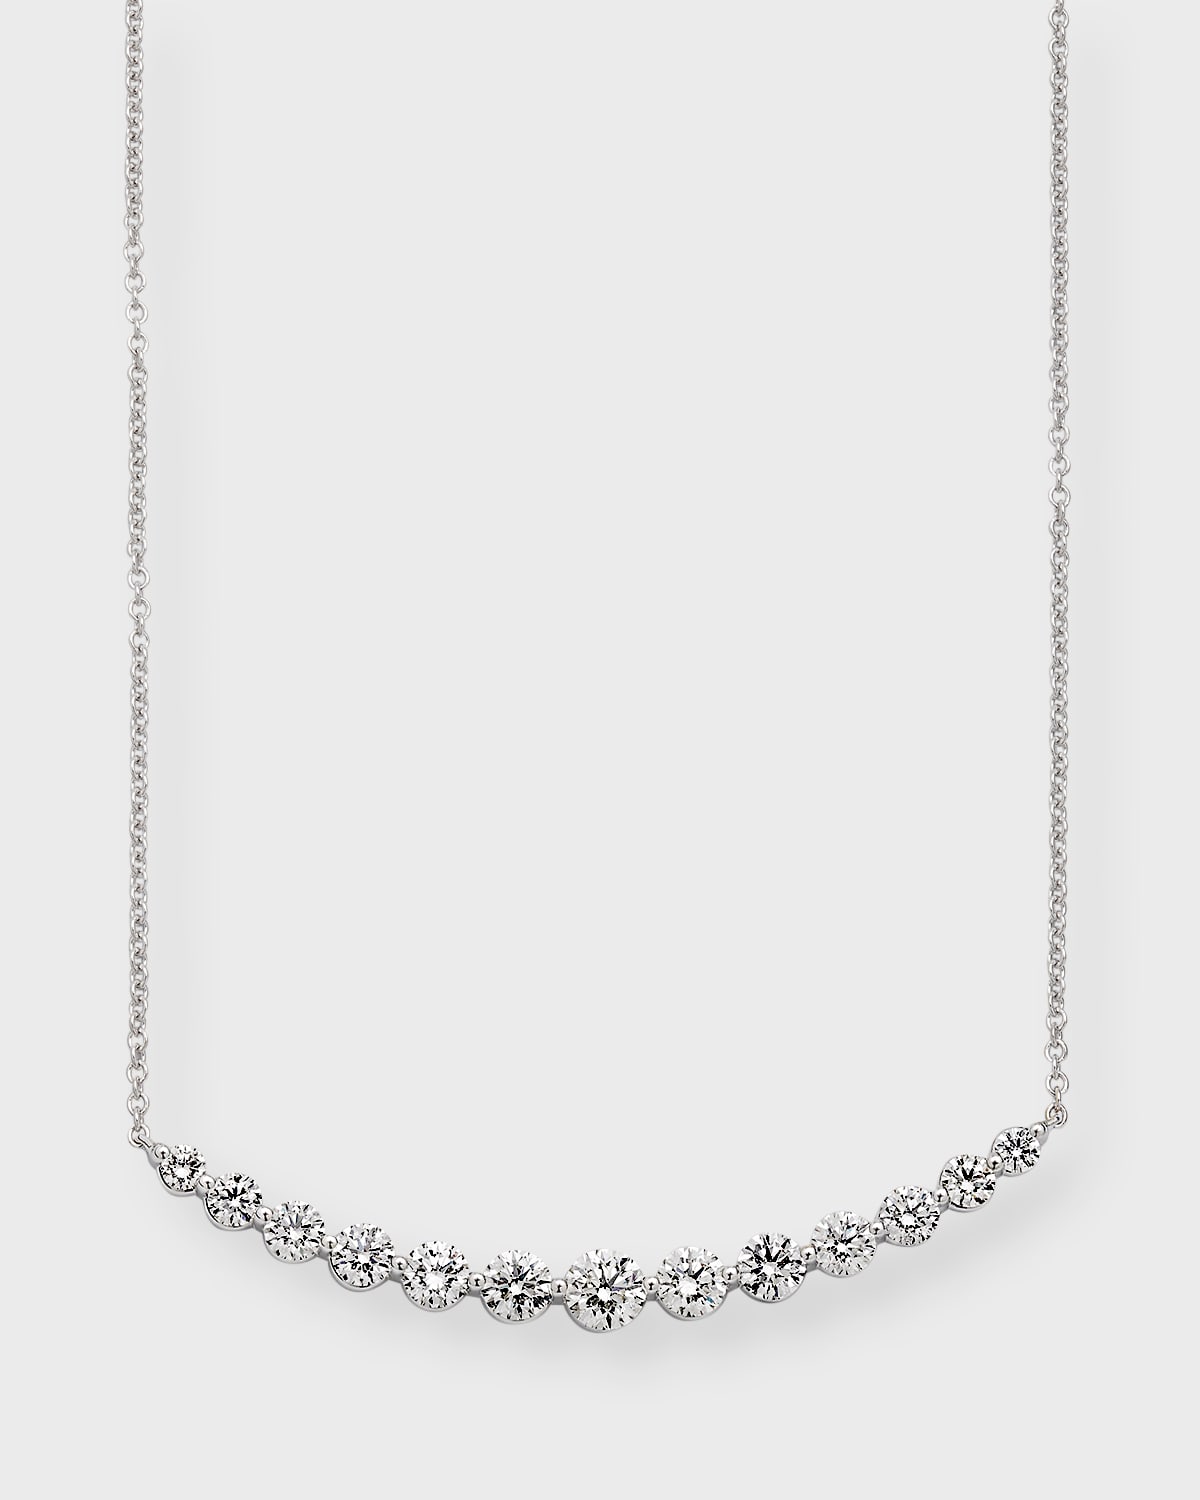 NM Diamond Collection 18k White Gold 13 Round Diamond Smiley Necklace